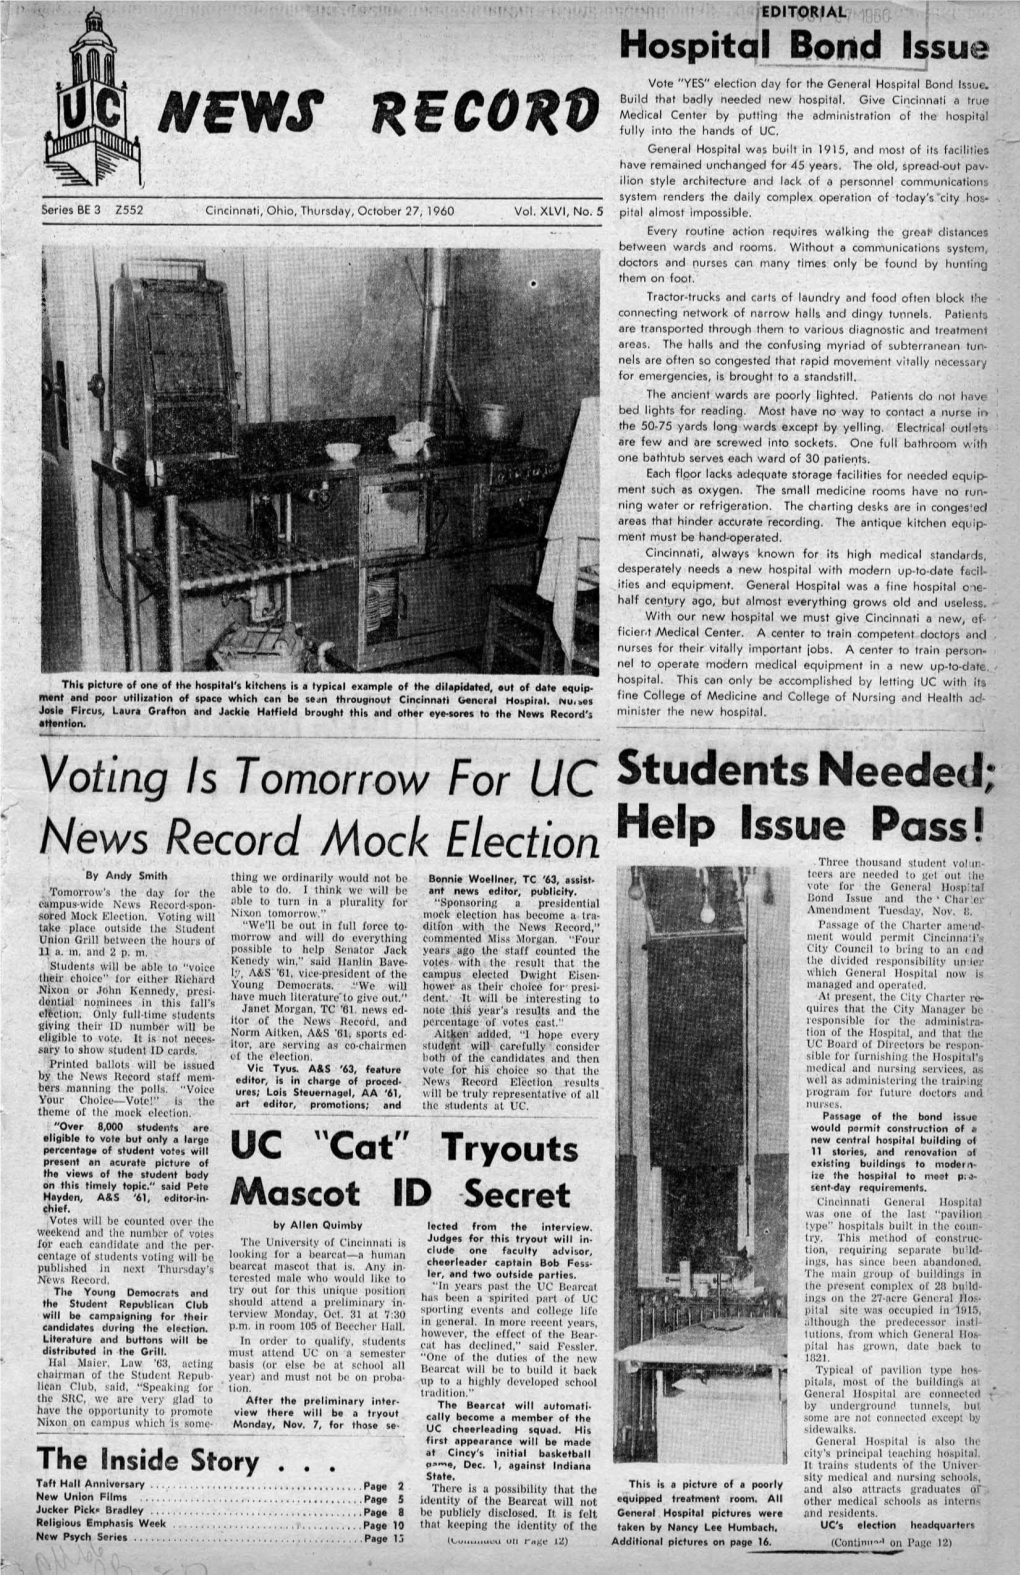 University of Cincinnati News Record. Thursday, October 27, 1960